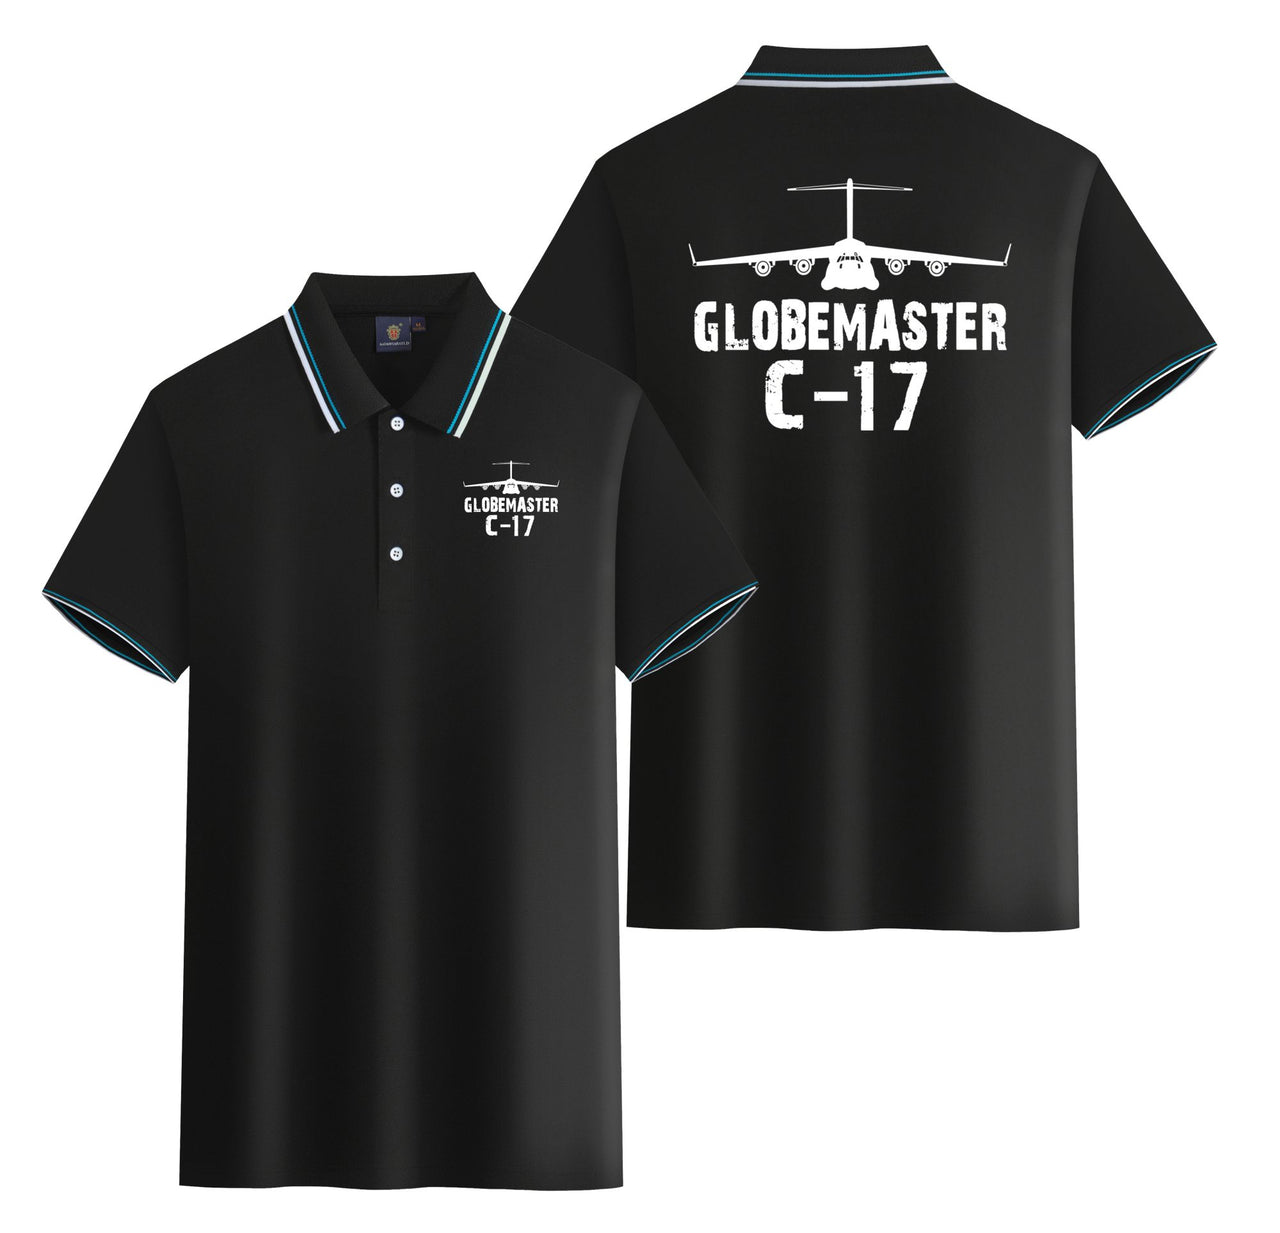 GlobeMaster C-17 & Plane Designed Stylish Polo T-Shirts (Double-Side)